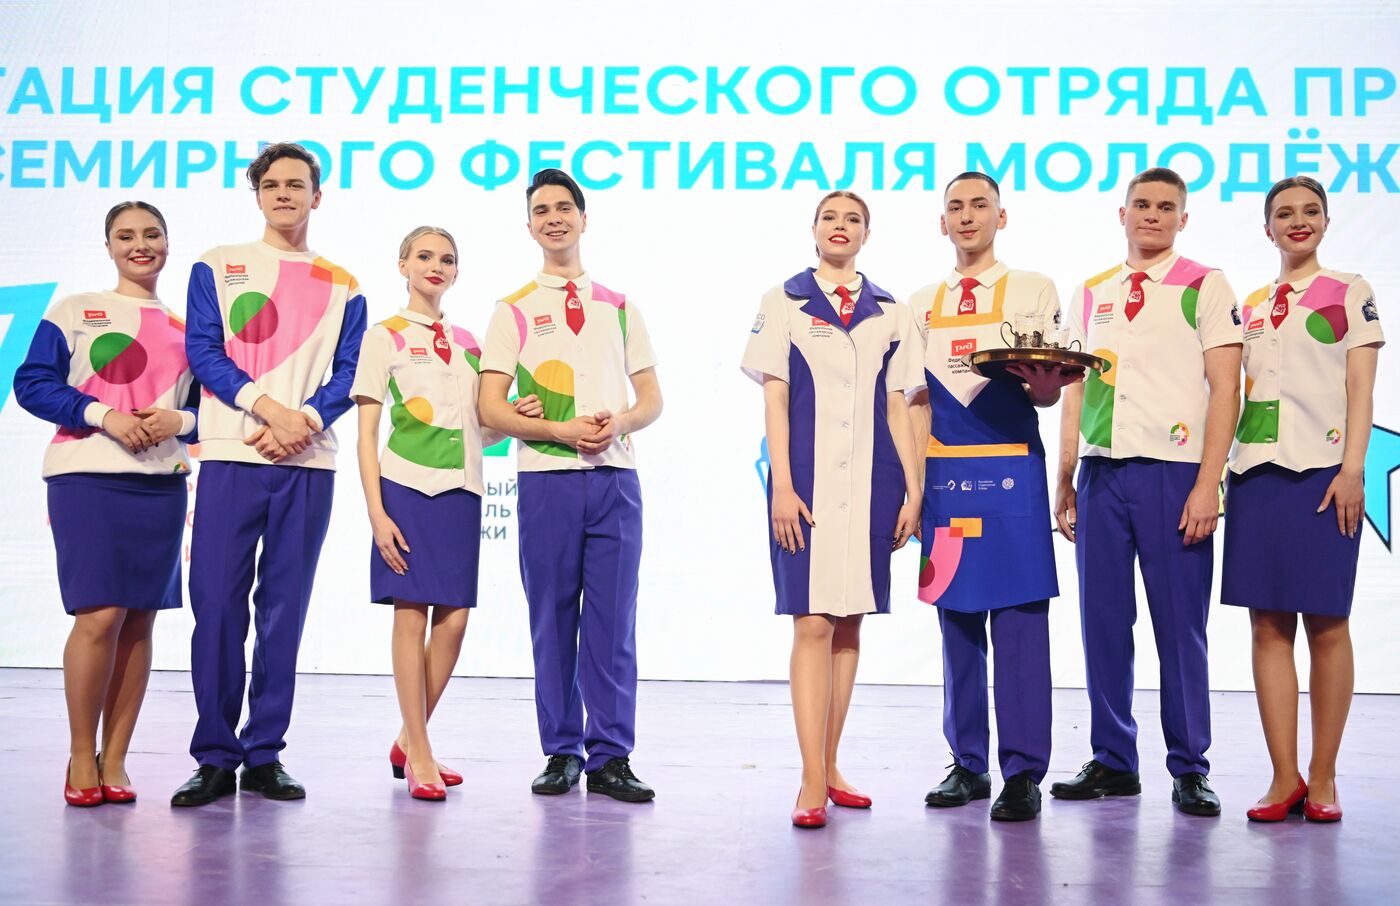 Выставка "Россия". Презентация формы на Всемирный фестиваль молодежи